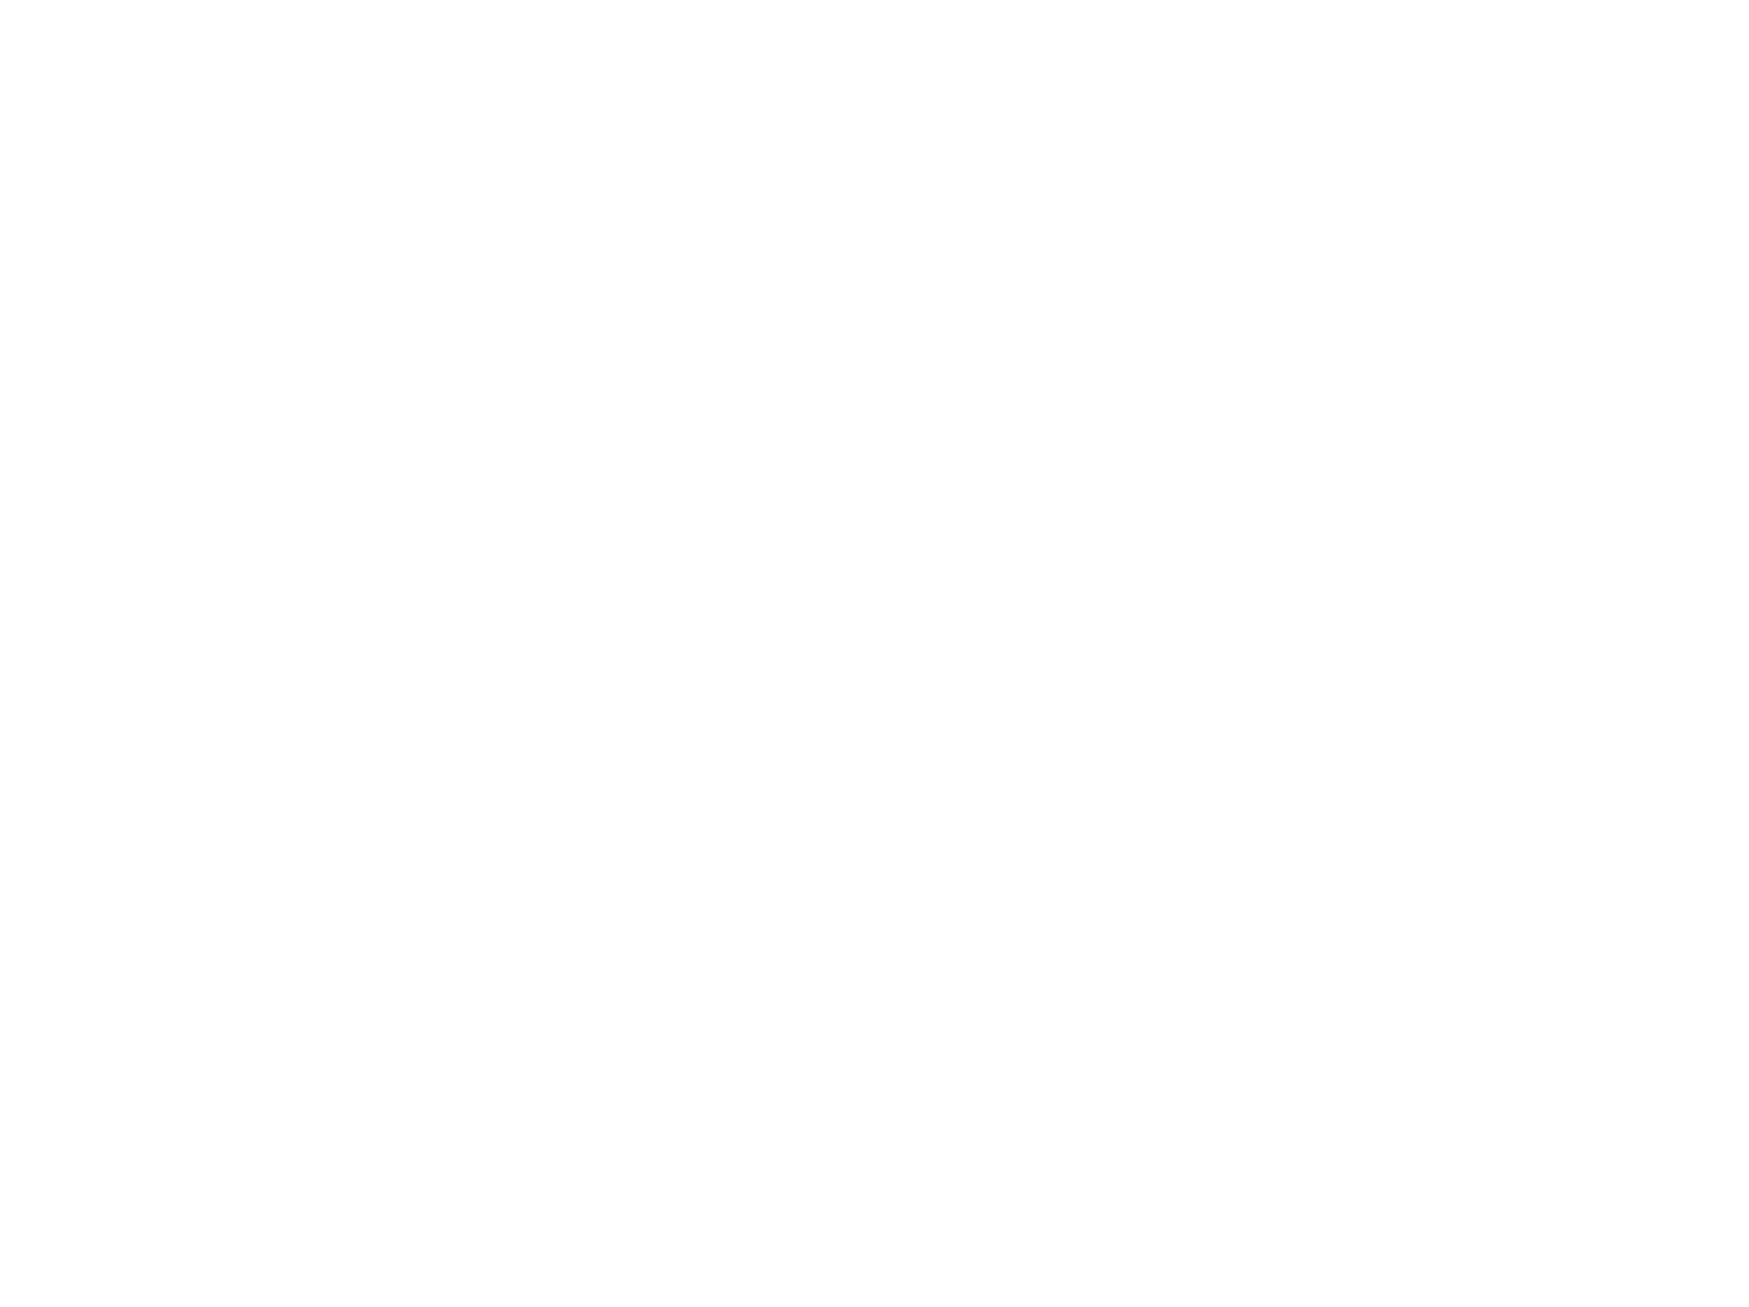 Michelangelo's Sistine Chapel in El Paso: The Exhibit